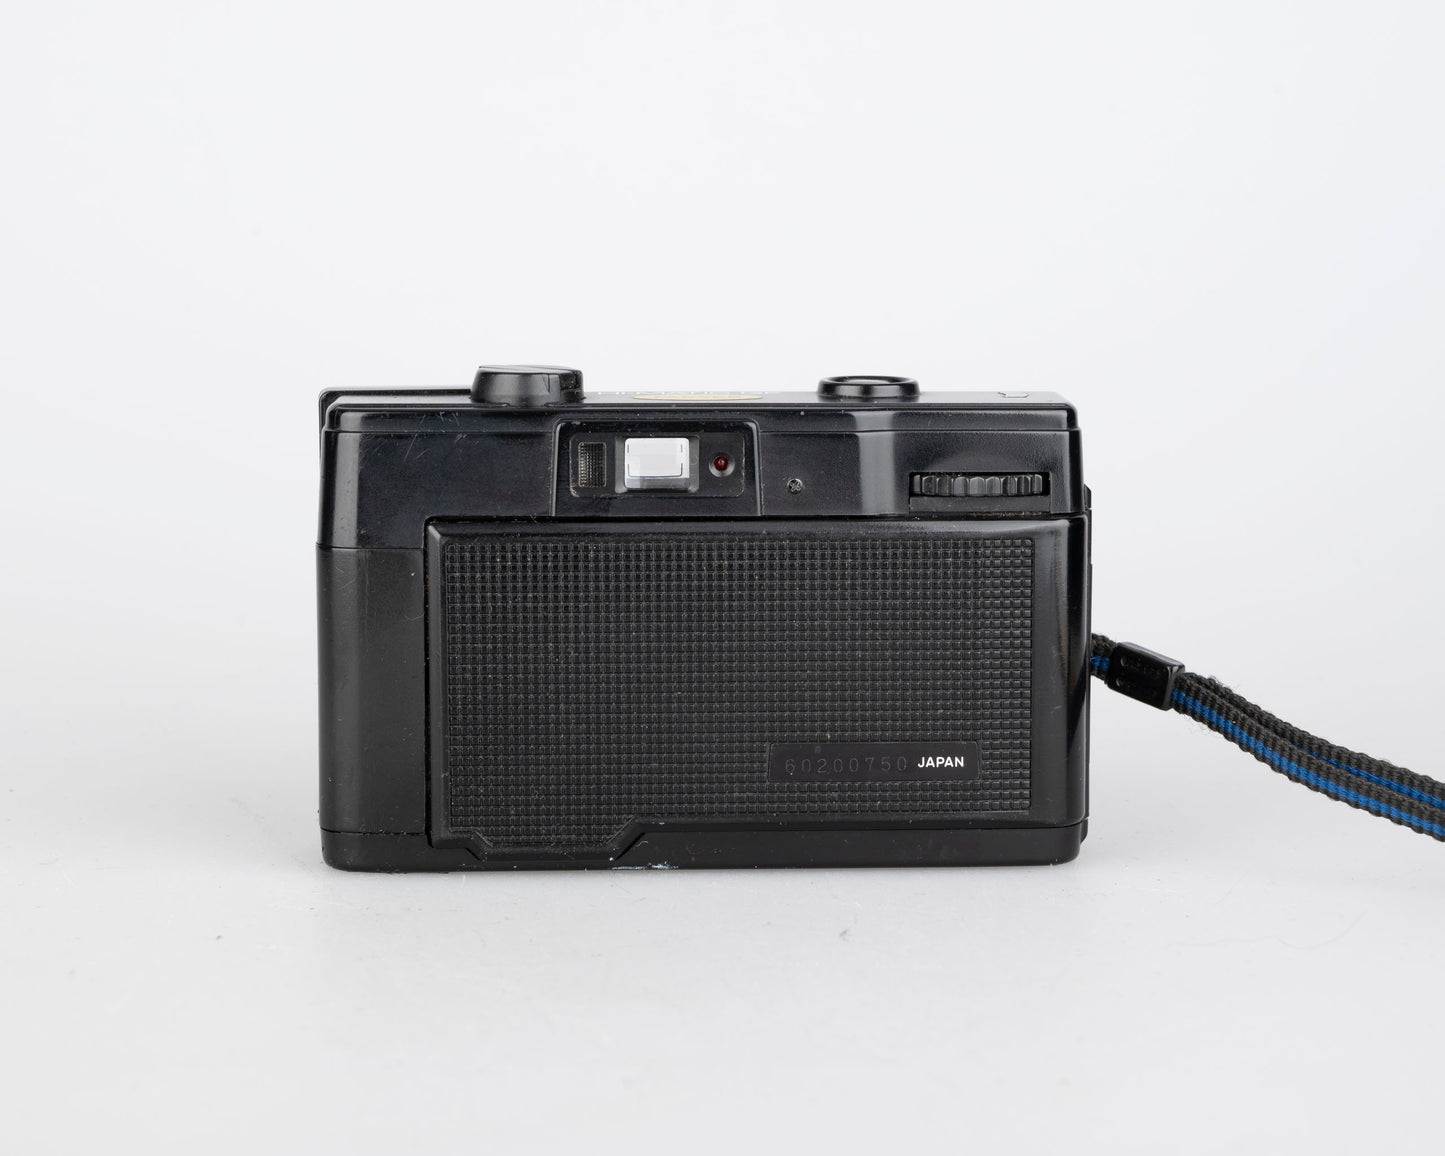 Appareil photo compact Minolta Hi-Matic GF à mise au point de zone 35 mm avec flash intégré